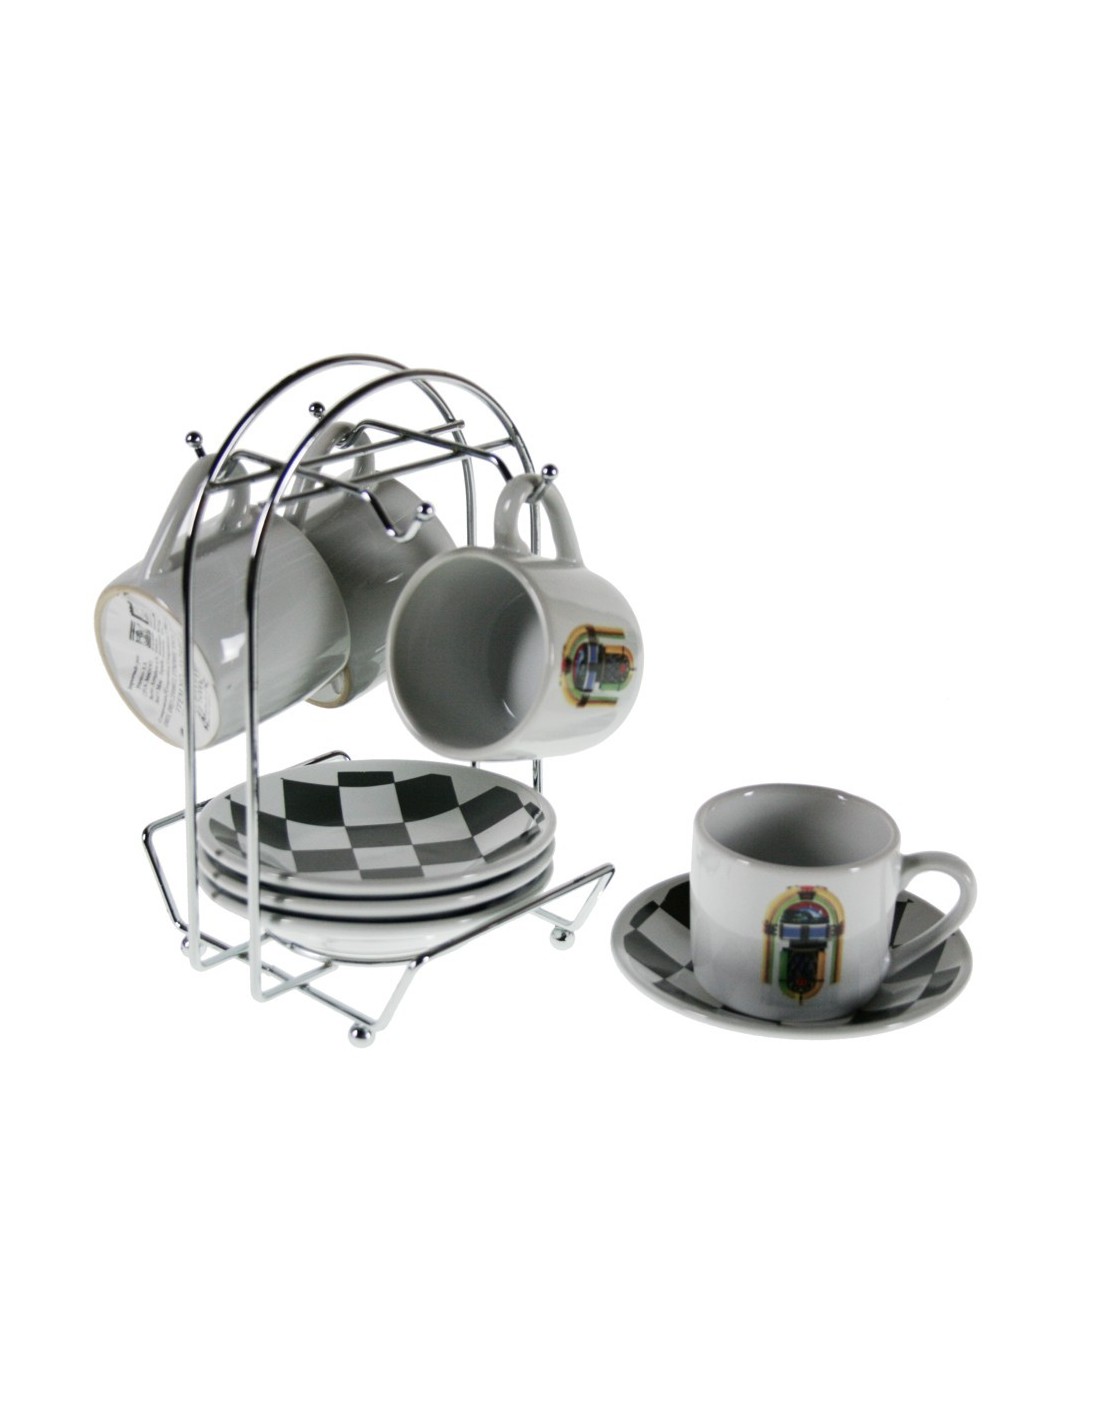 Señal Celda de poder Restringir Juego Tazas café retro con soporte americano estilo servicio de mesa